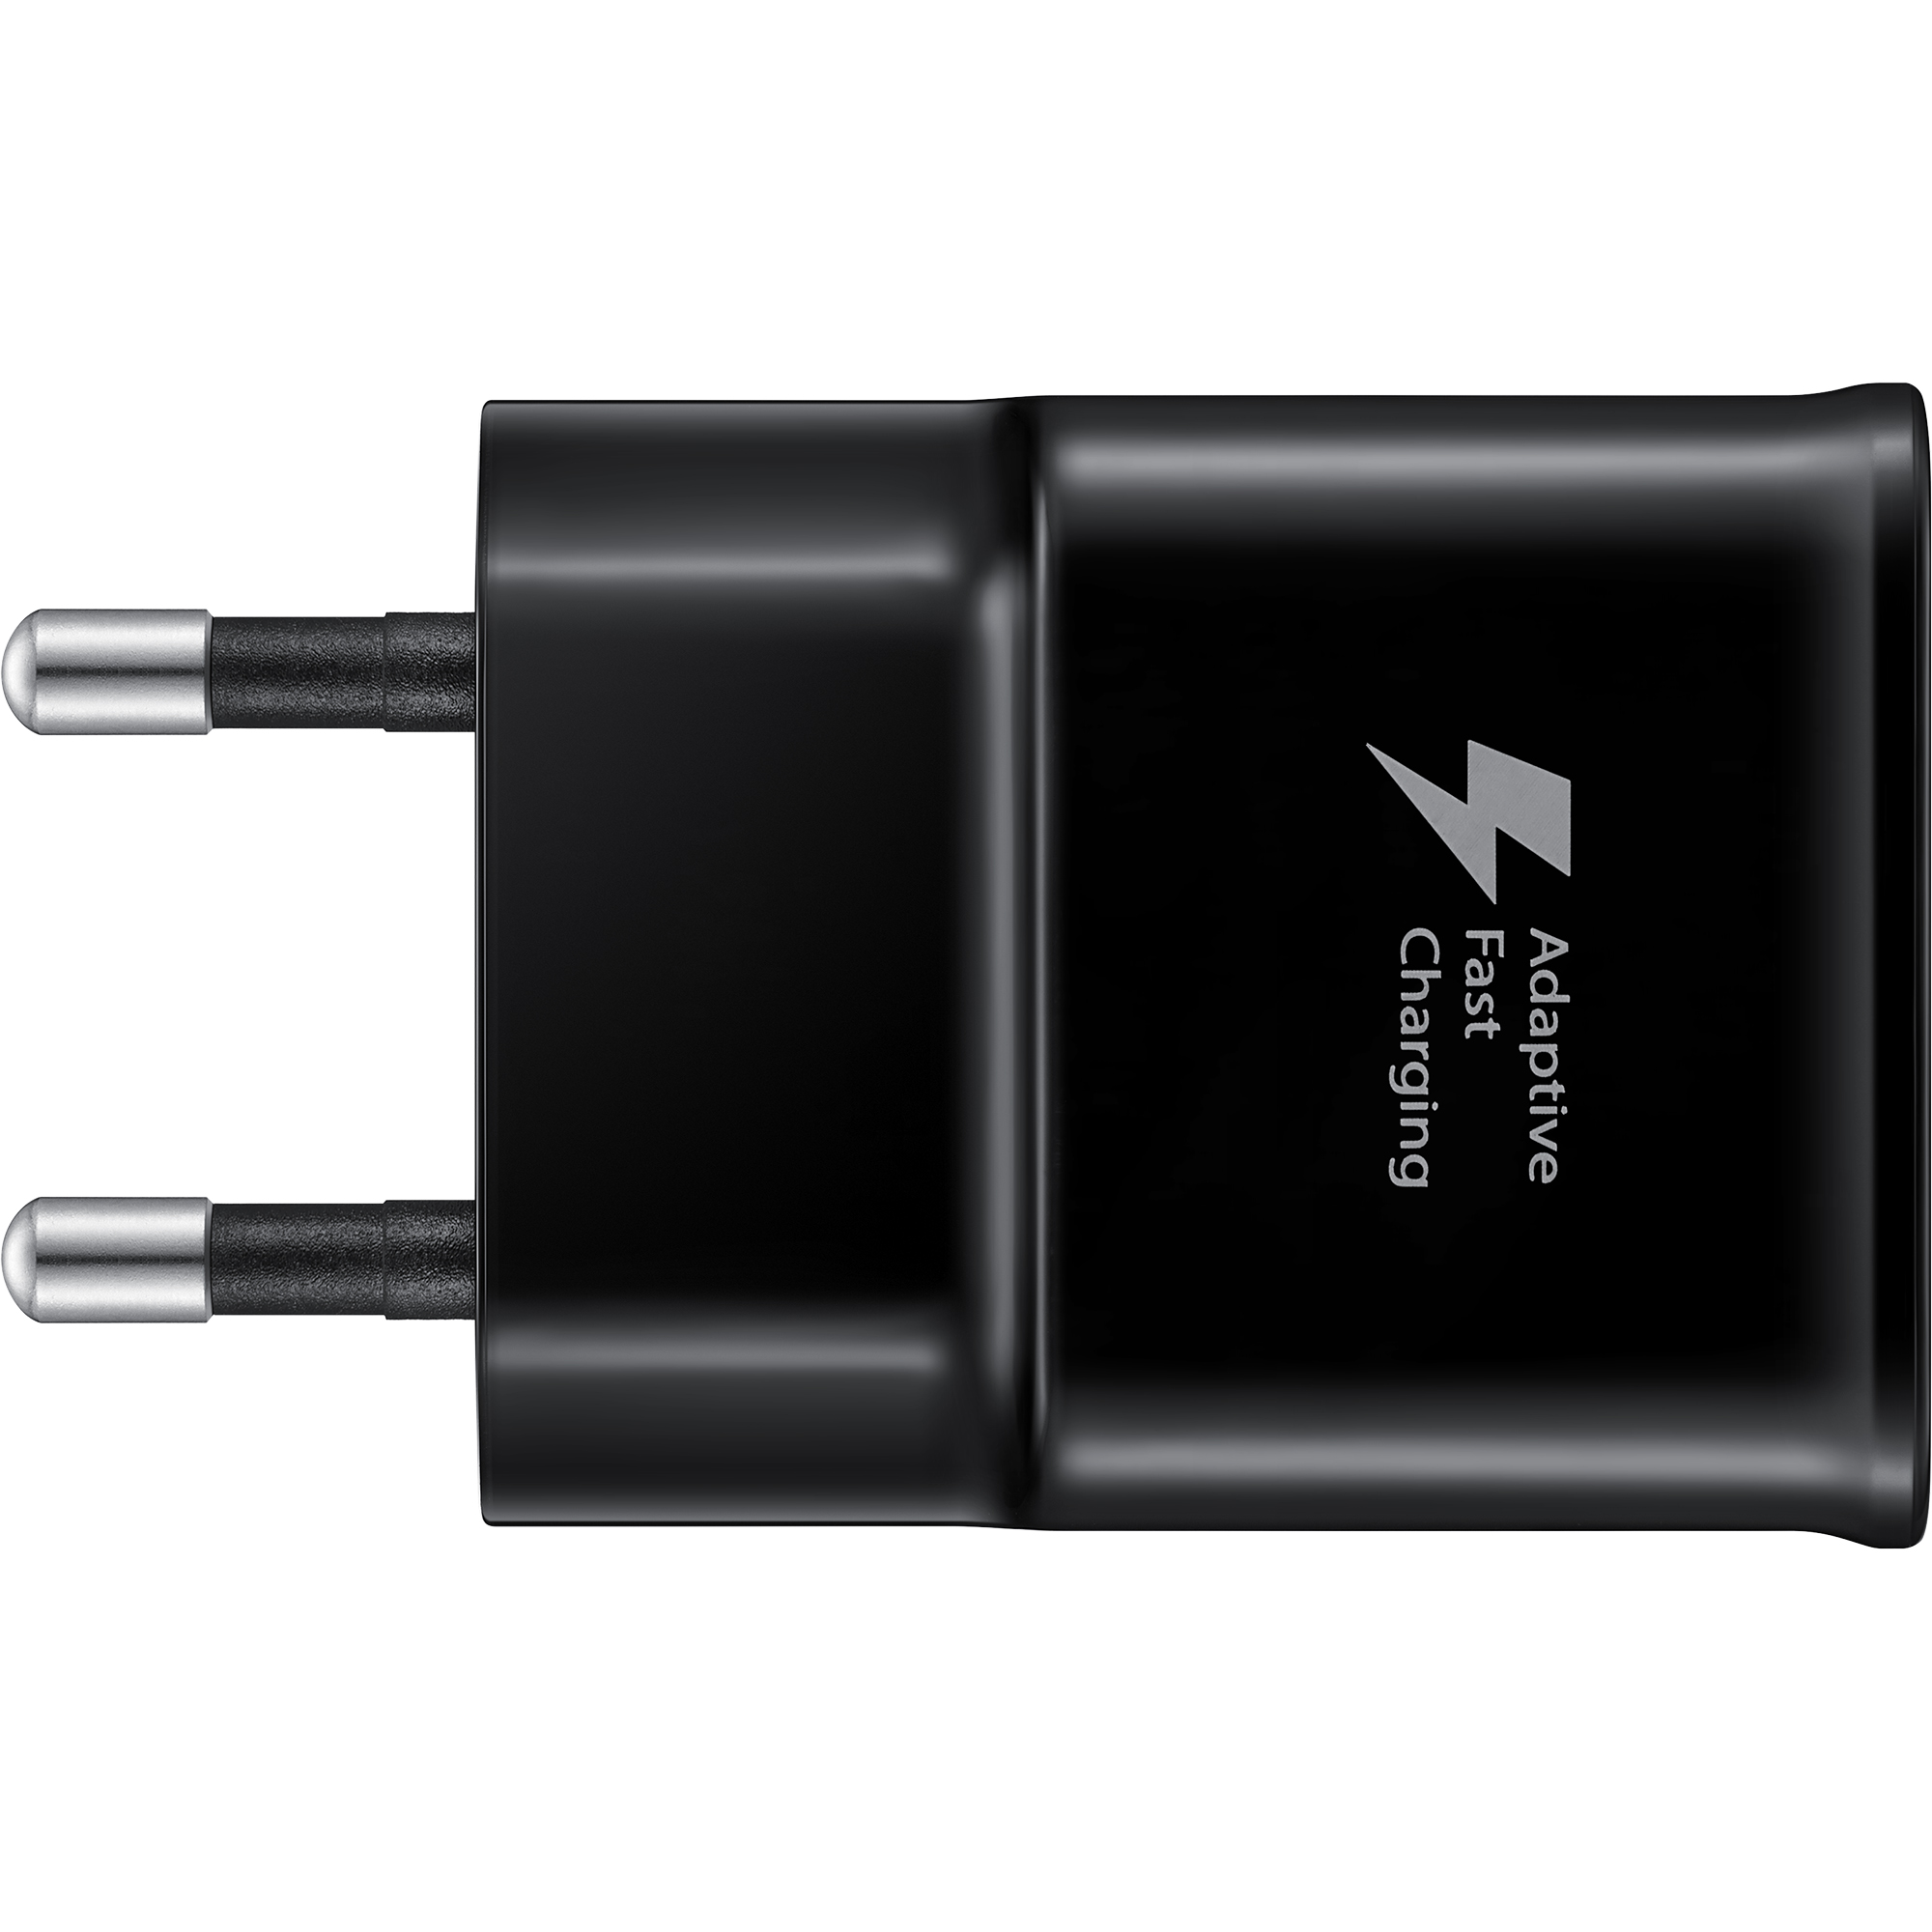 Сетевое зарядное устройство Samsung EP-TA20 (EP-TA20EBECGRU) черный - фото 5